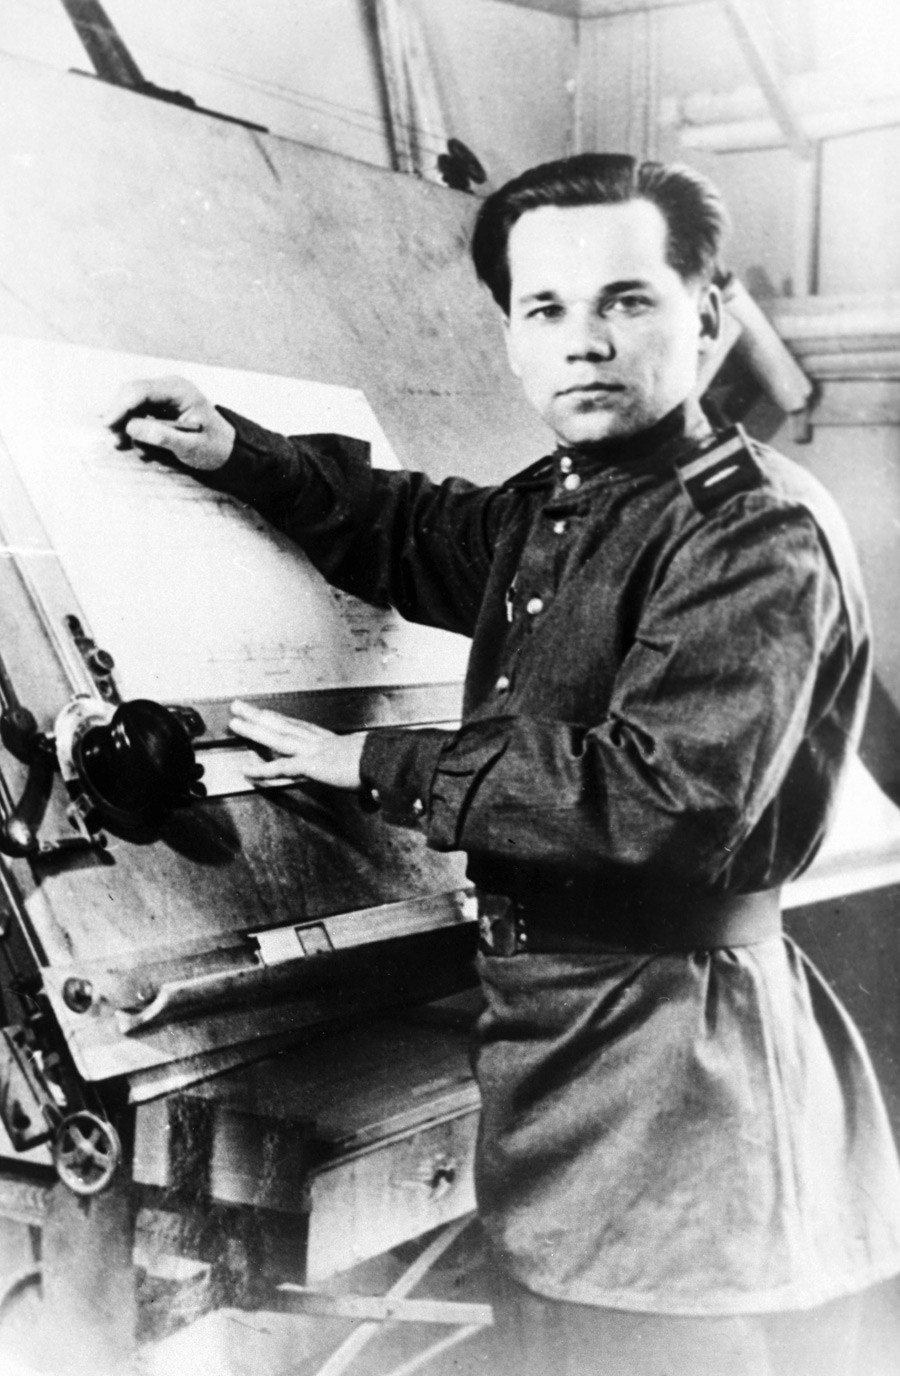 Stariji vodnik Mihail Kalašnjikov za vrijeme rada na konstruiranju automata AK-47. Kalašnjikovljev automat je pobijedio na natječaju 1947. godine, poslije čega je postao dio arsenala SSSR-a.
